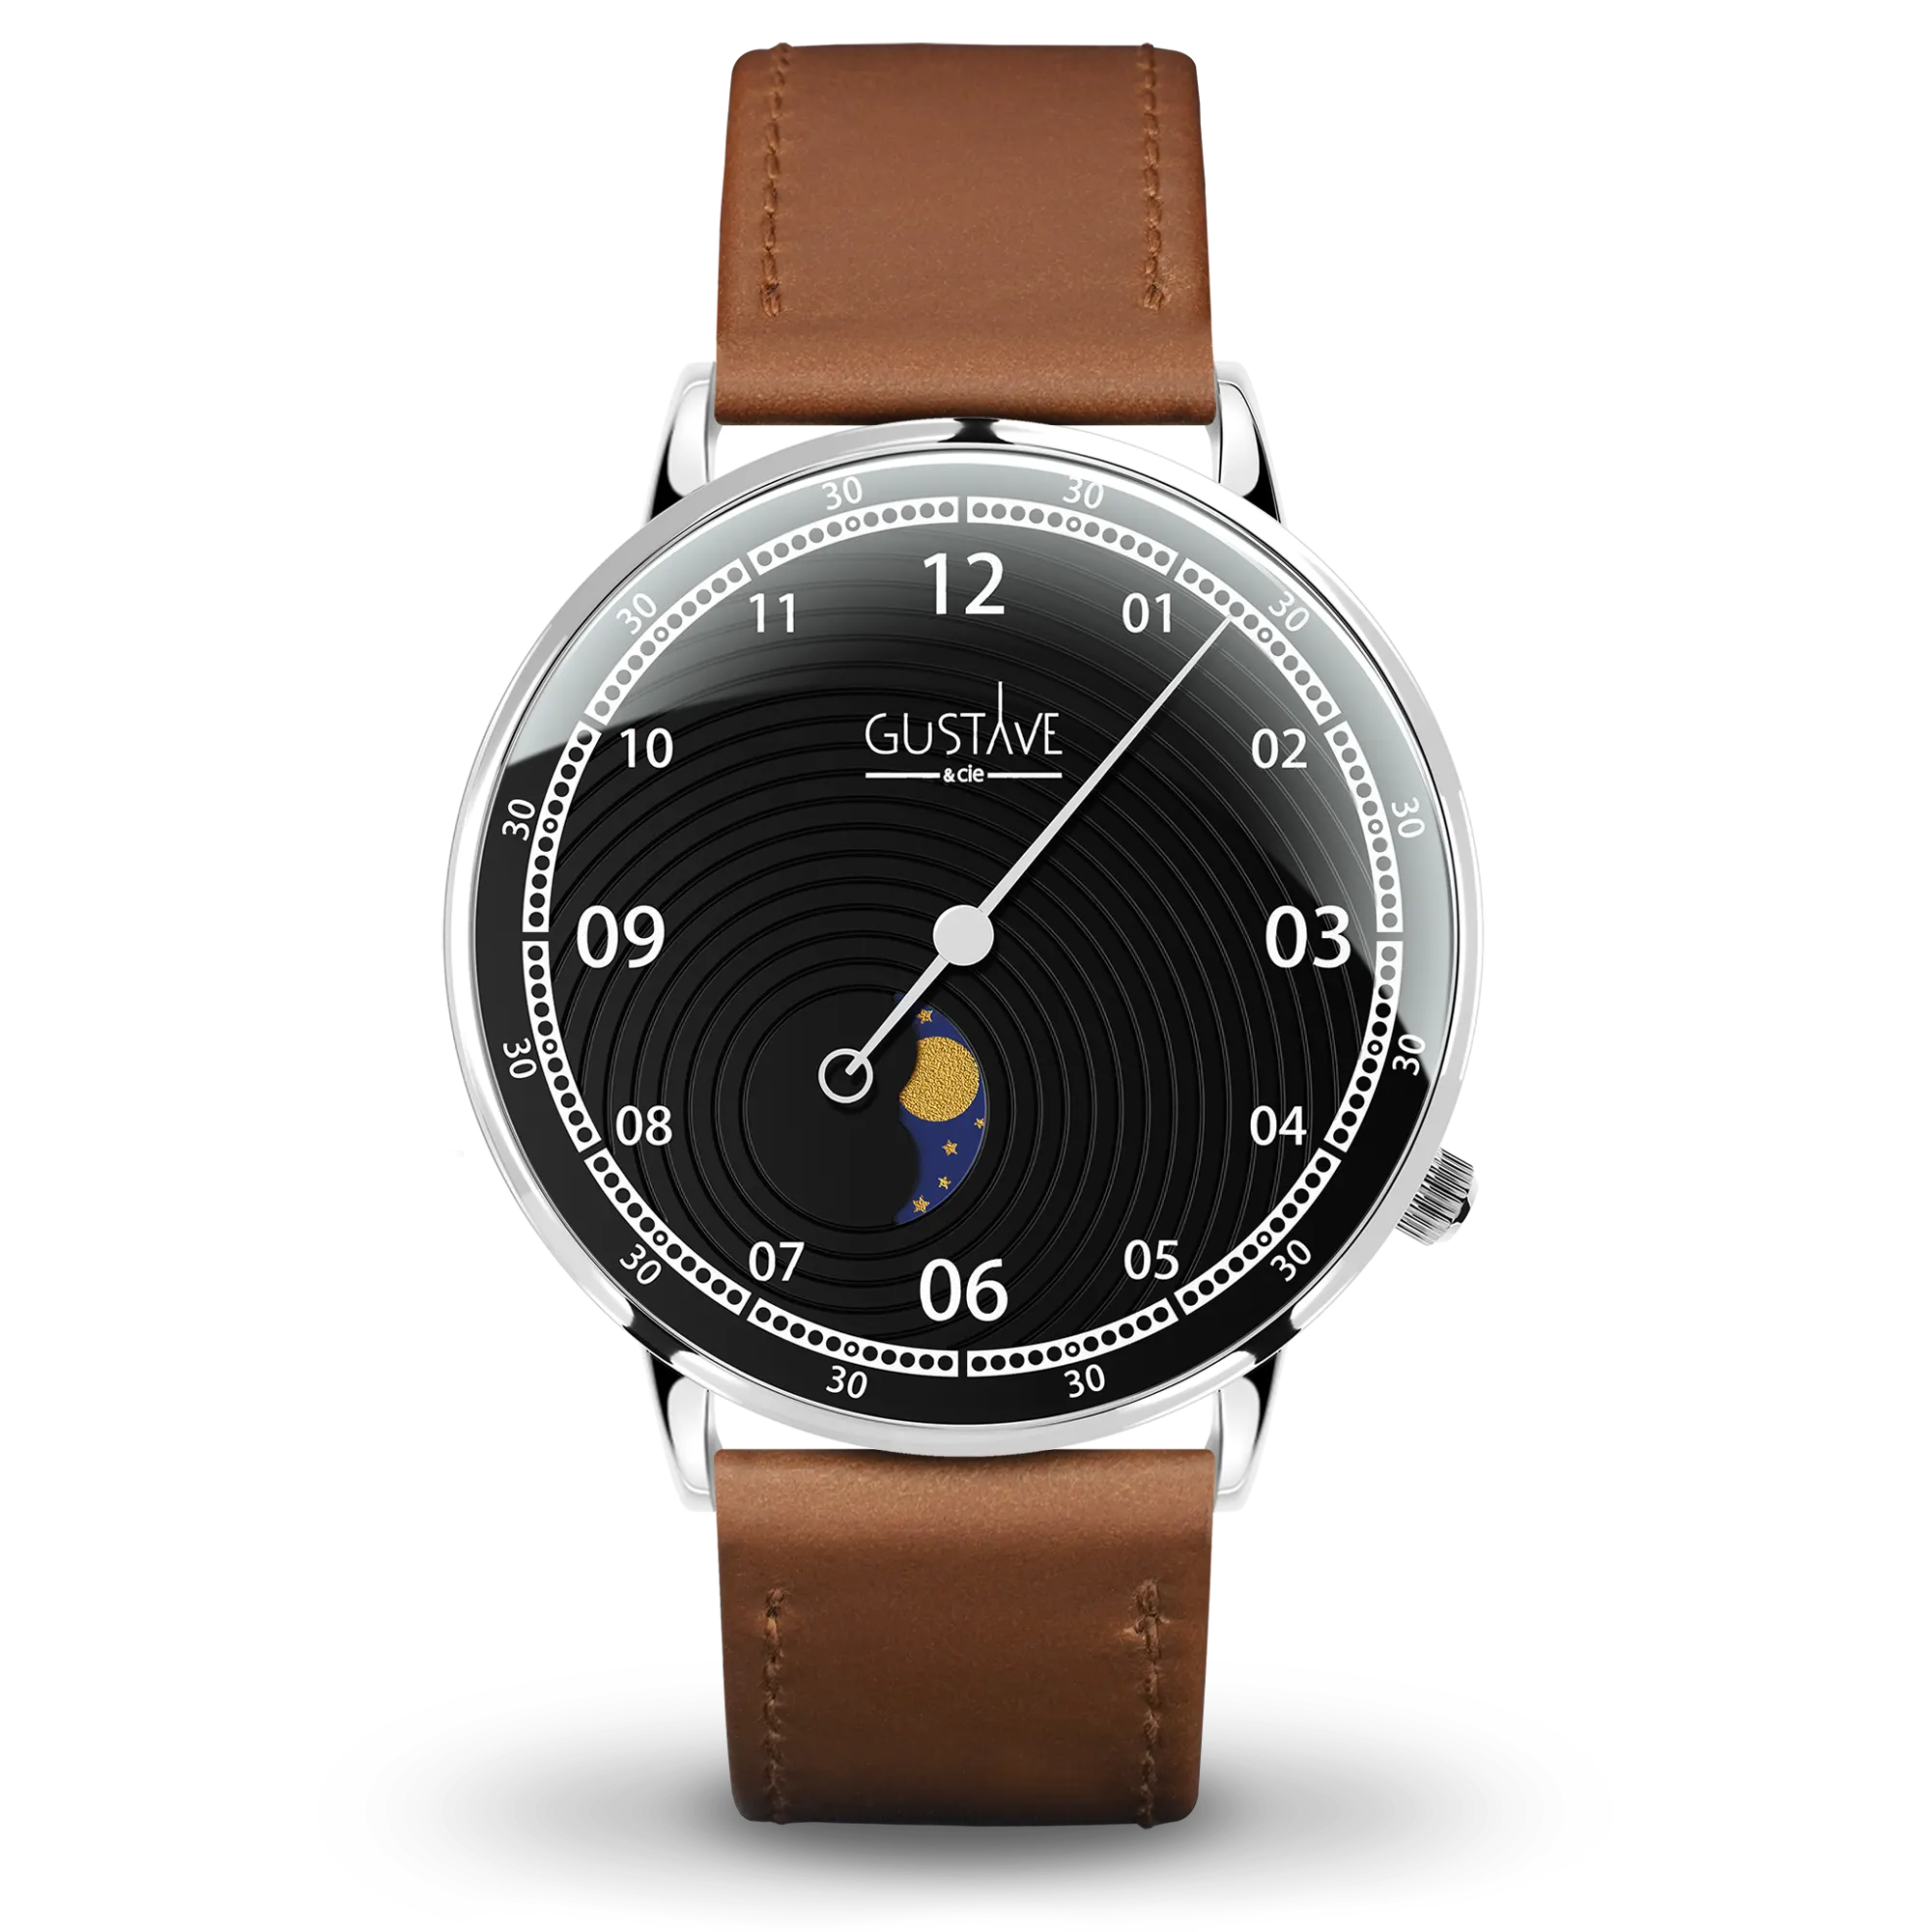 Relógio Georges 12H 40mm prateado e preto, pulseira de couro marrom com costura